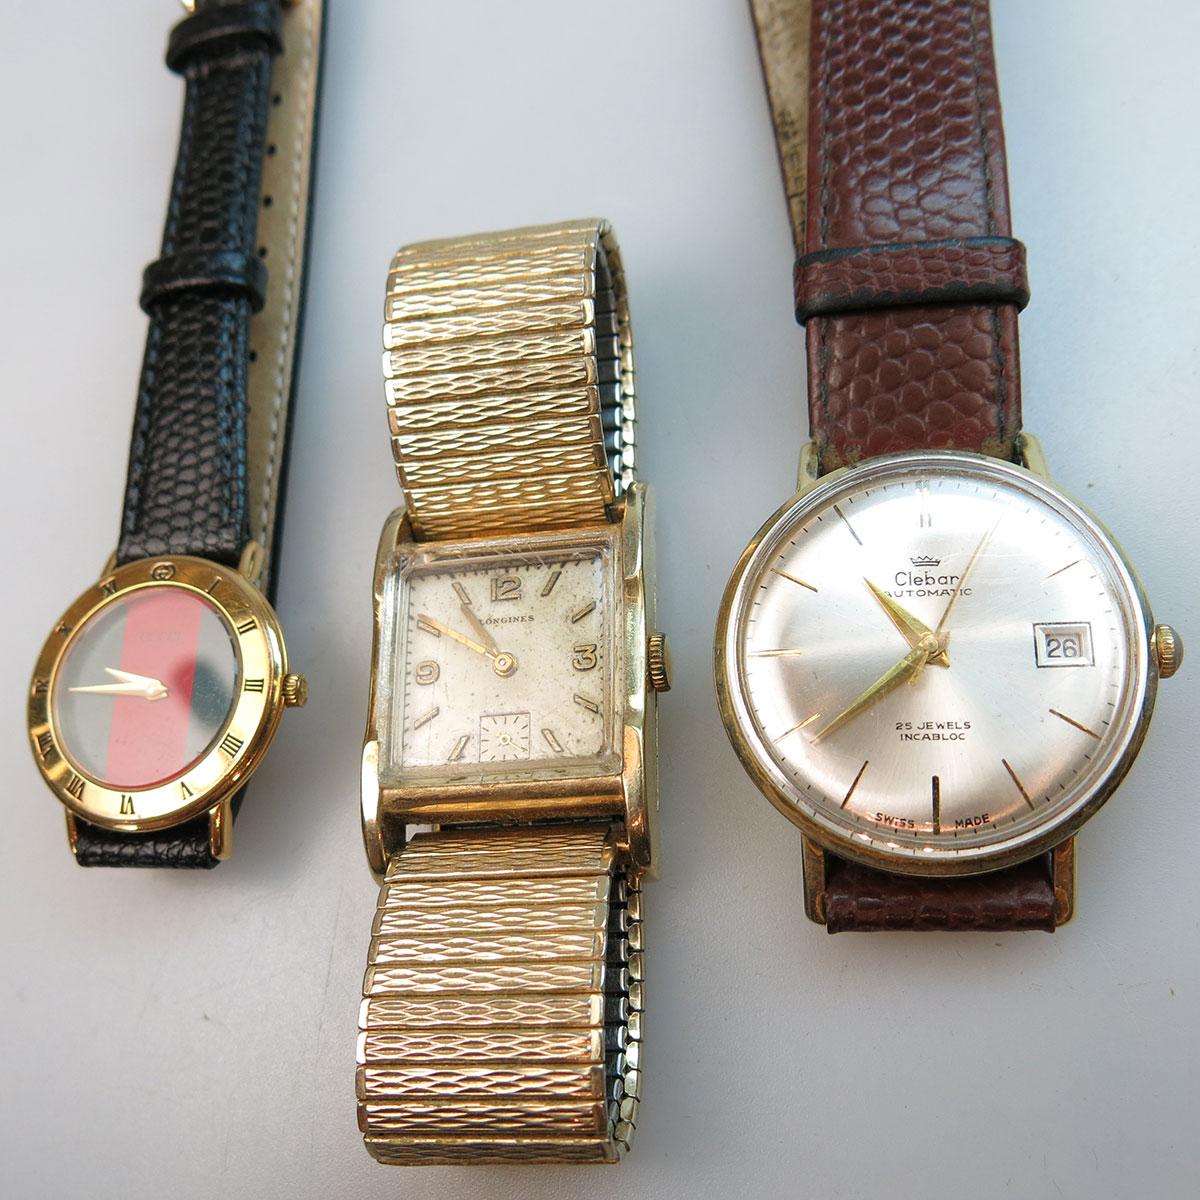 Clebar Automatic Wristwatch